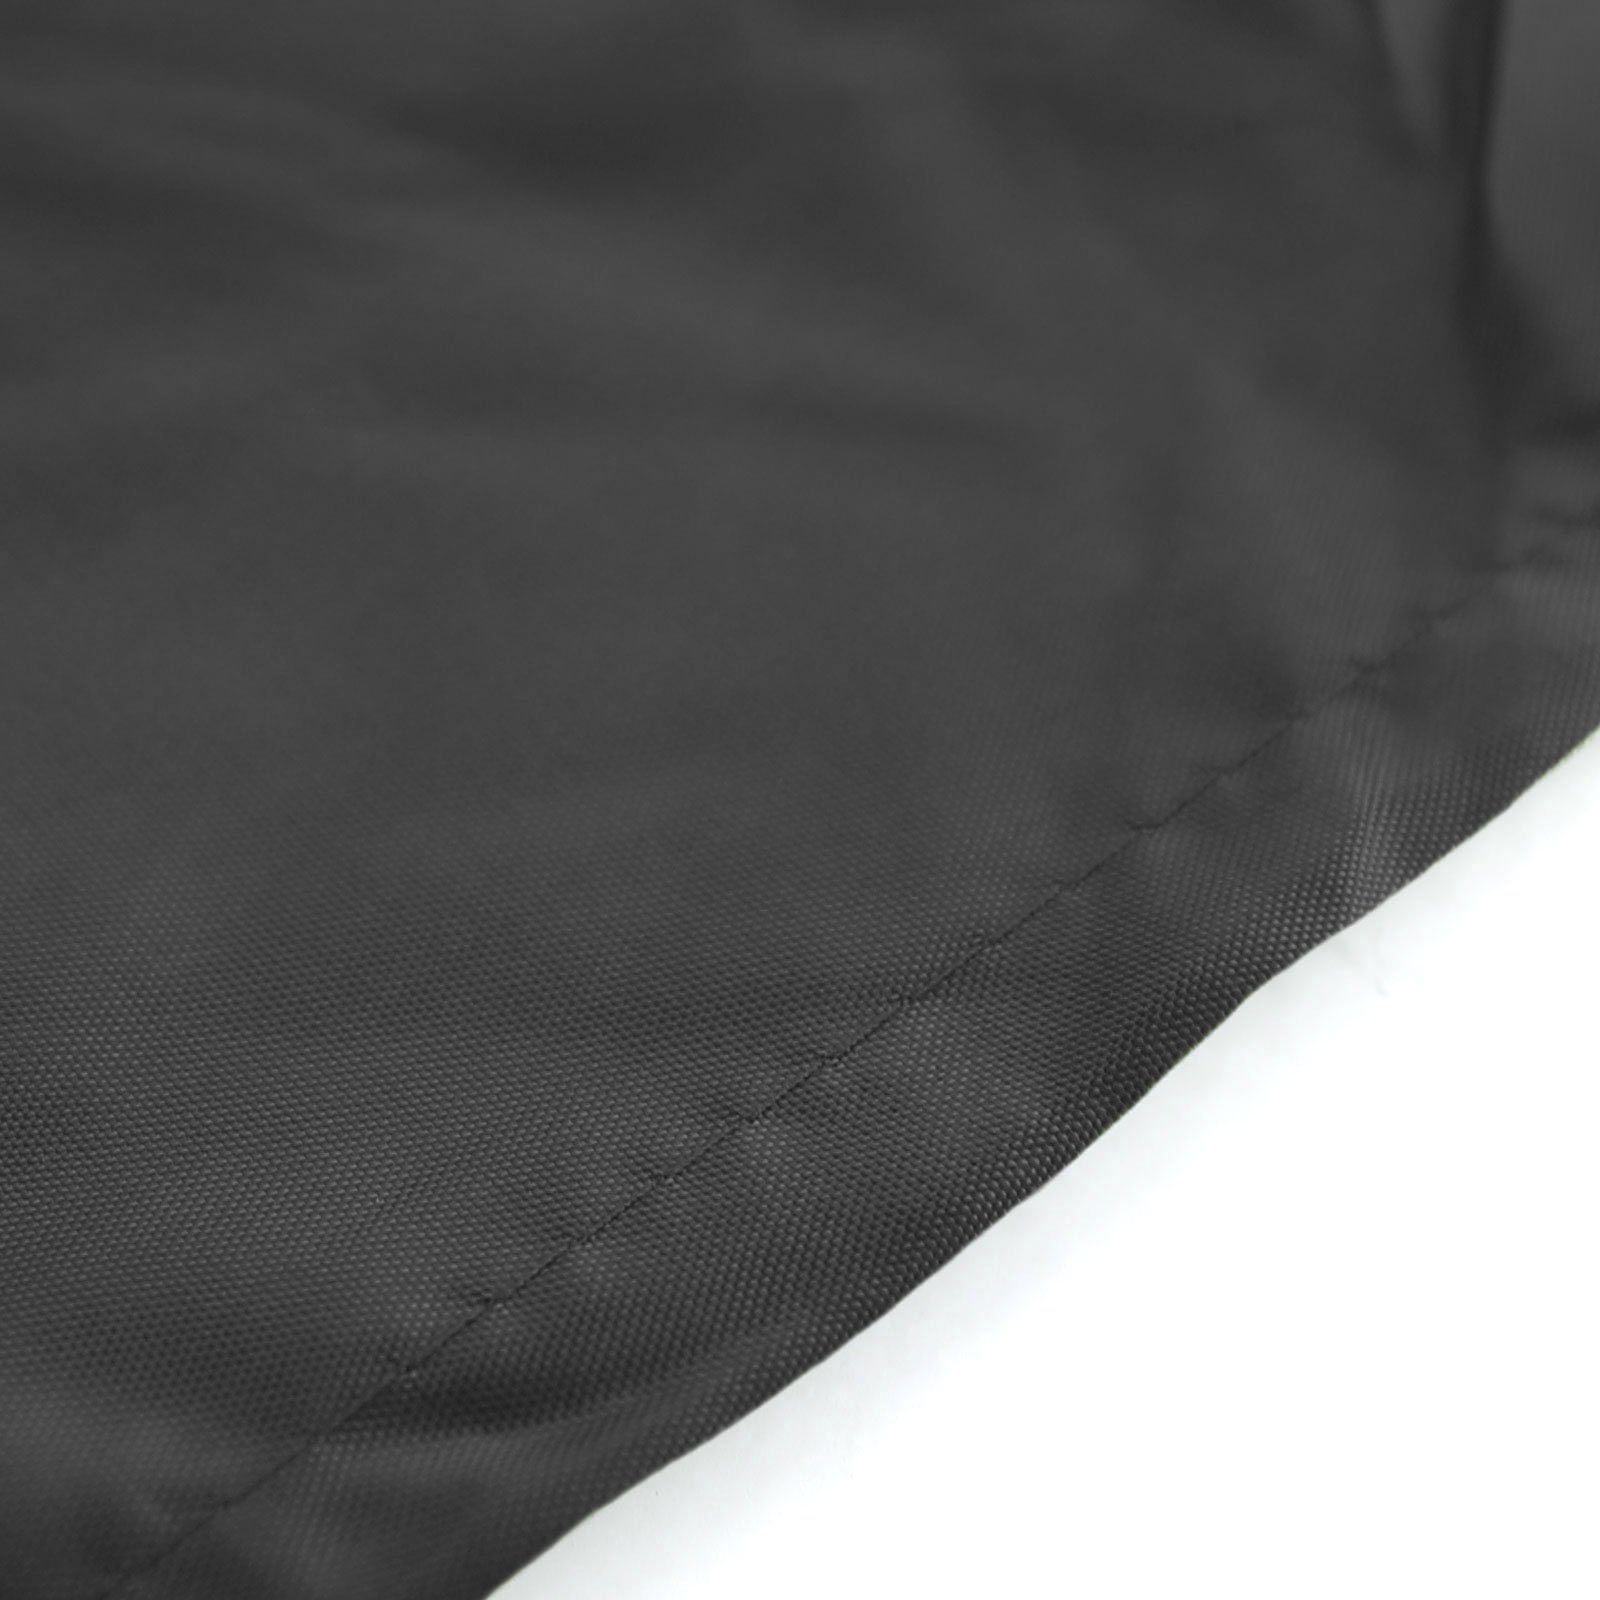 RAMROXX Hängesessel Premium Schutzabdeckung 190x100cm Hängesessel Cover Schutzhülle Schwarz für